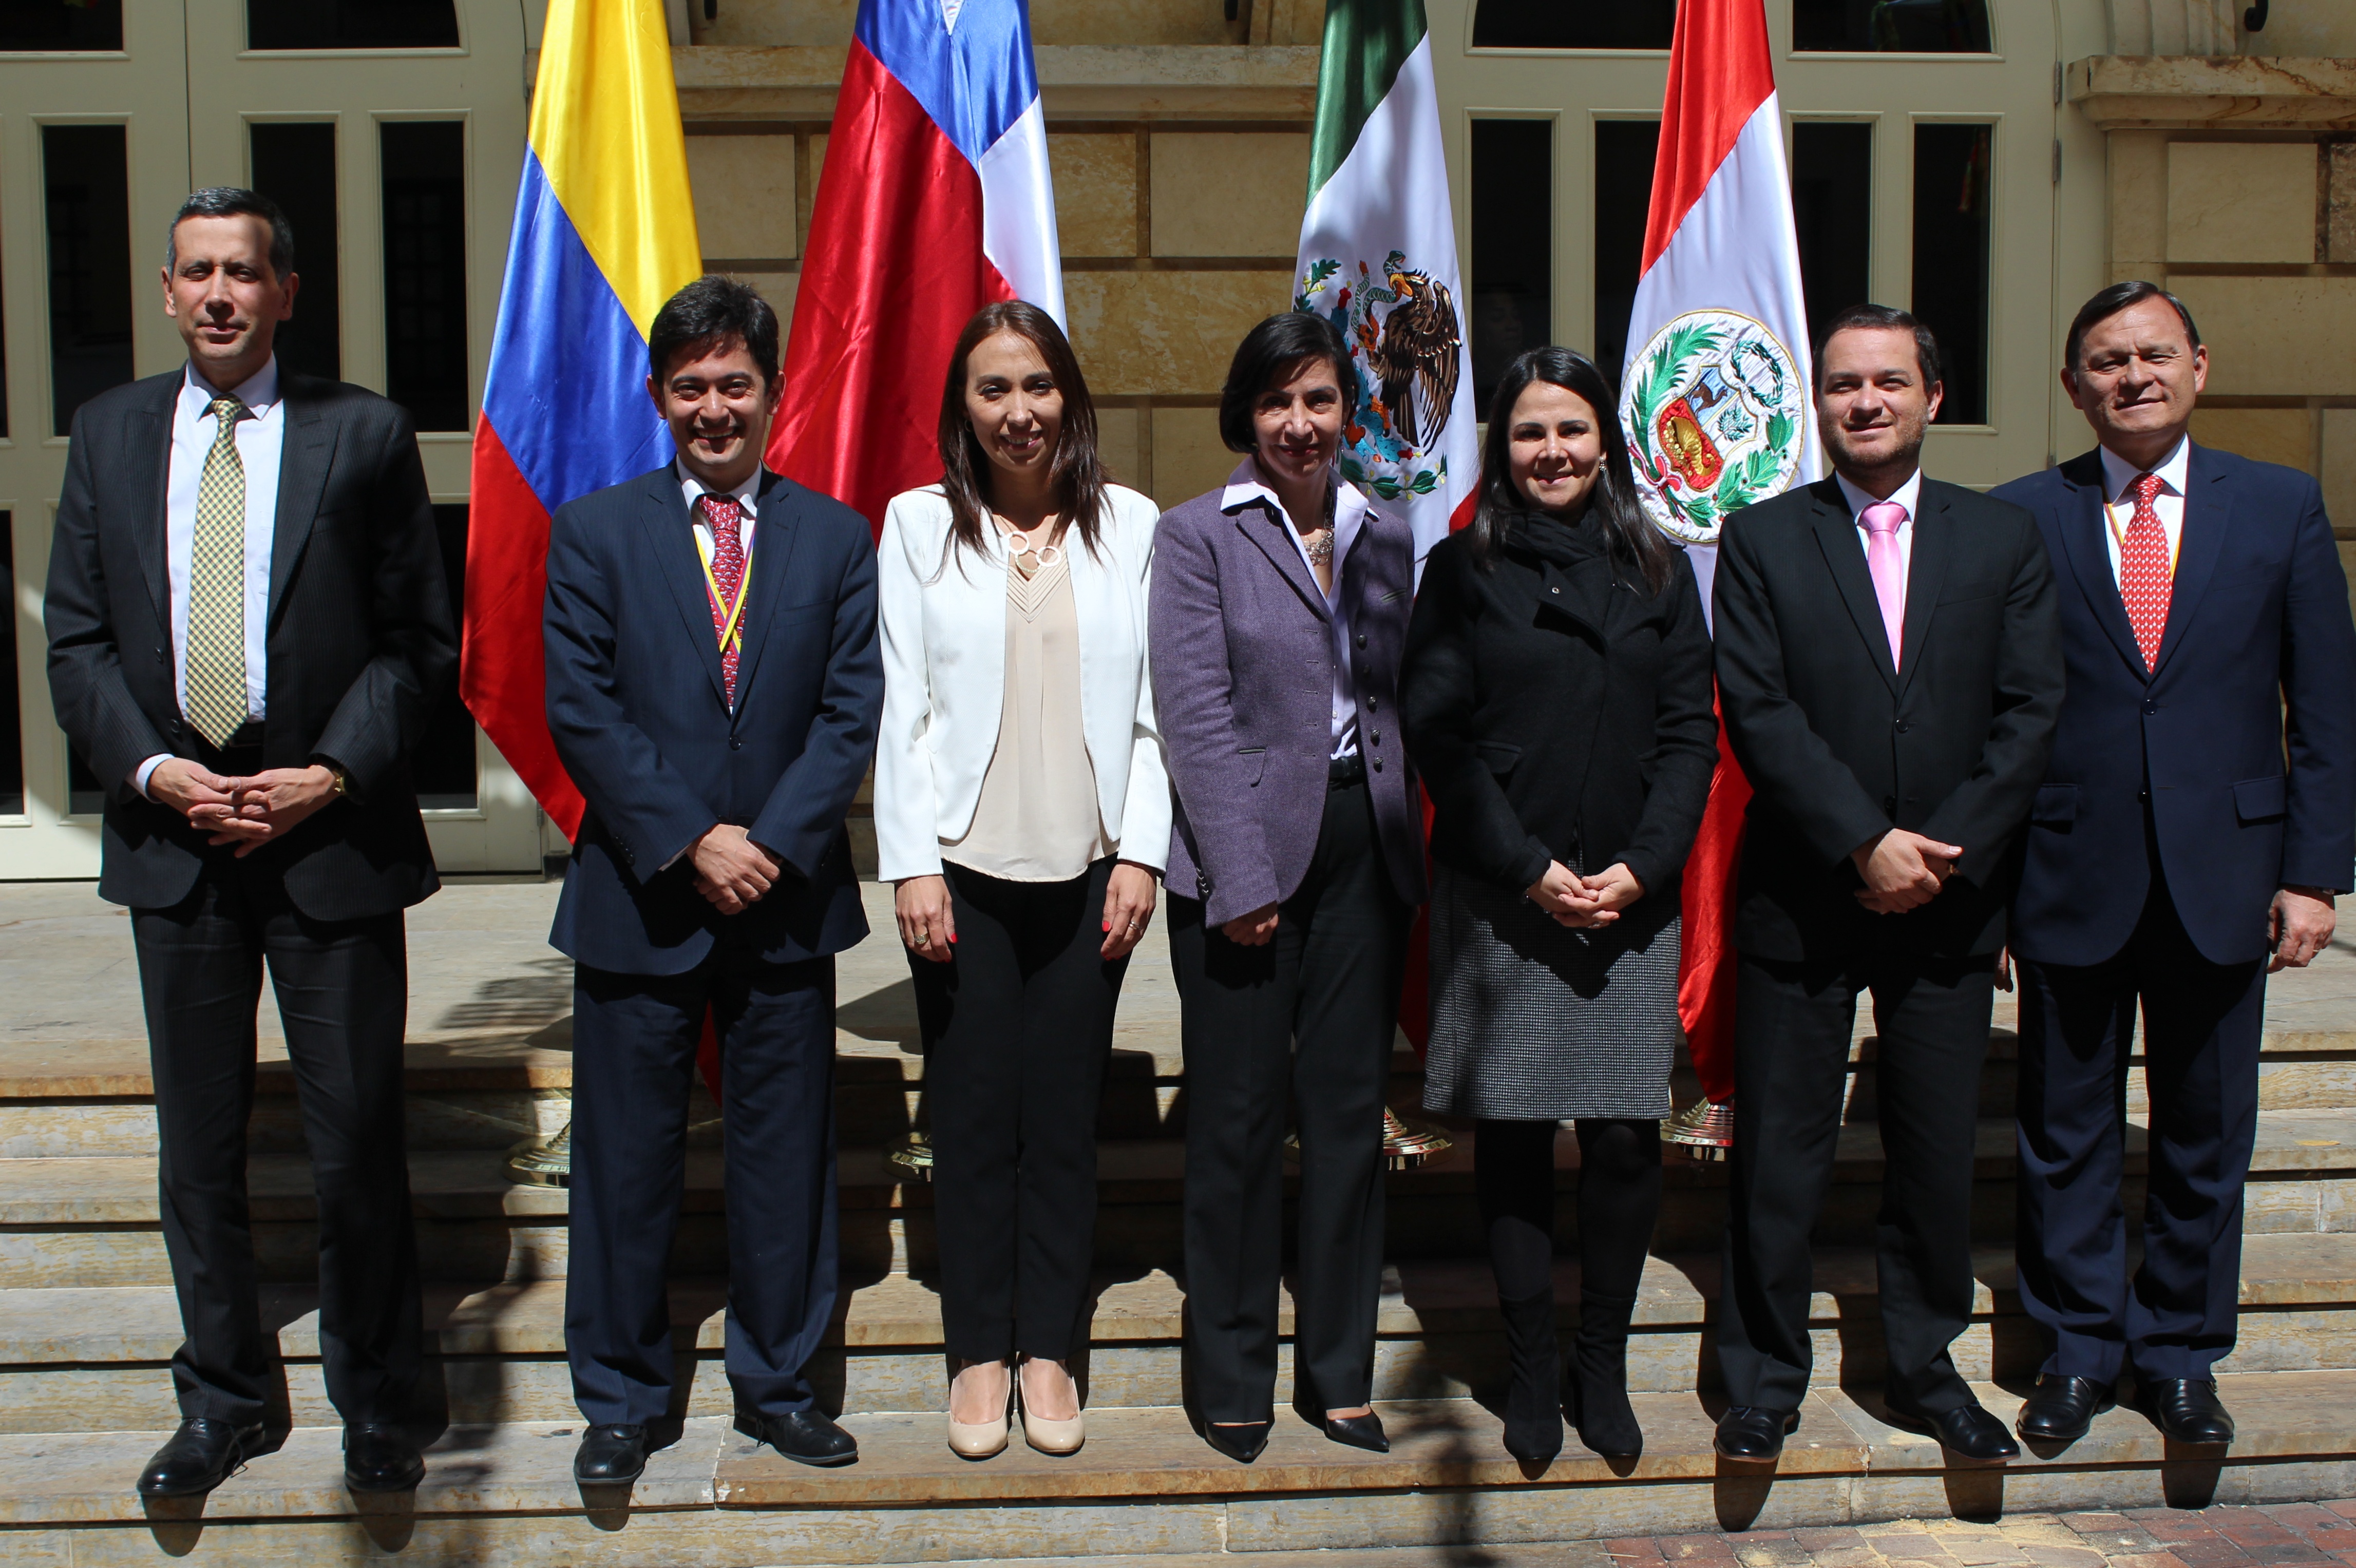 En el Palacio de San Carlos, sede de la Cancillería colombiana se realizó la XXXVIII Reunión del Grupo de Alto Nivel (GAN) de la Alianza del Pacífico, instancia que congrega a los Viceministros de las Cancillerías y de Comercio de los países miembros de la Alianza del Pacífico.